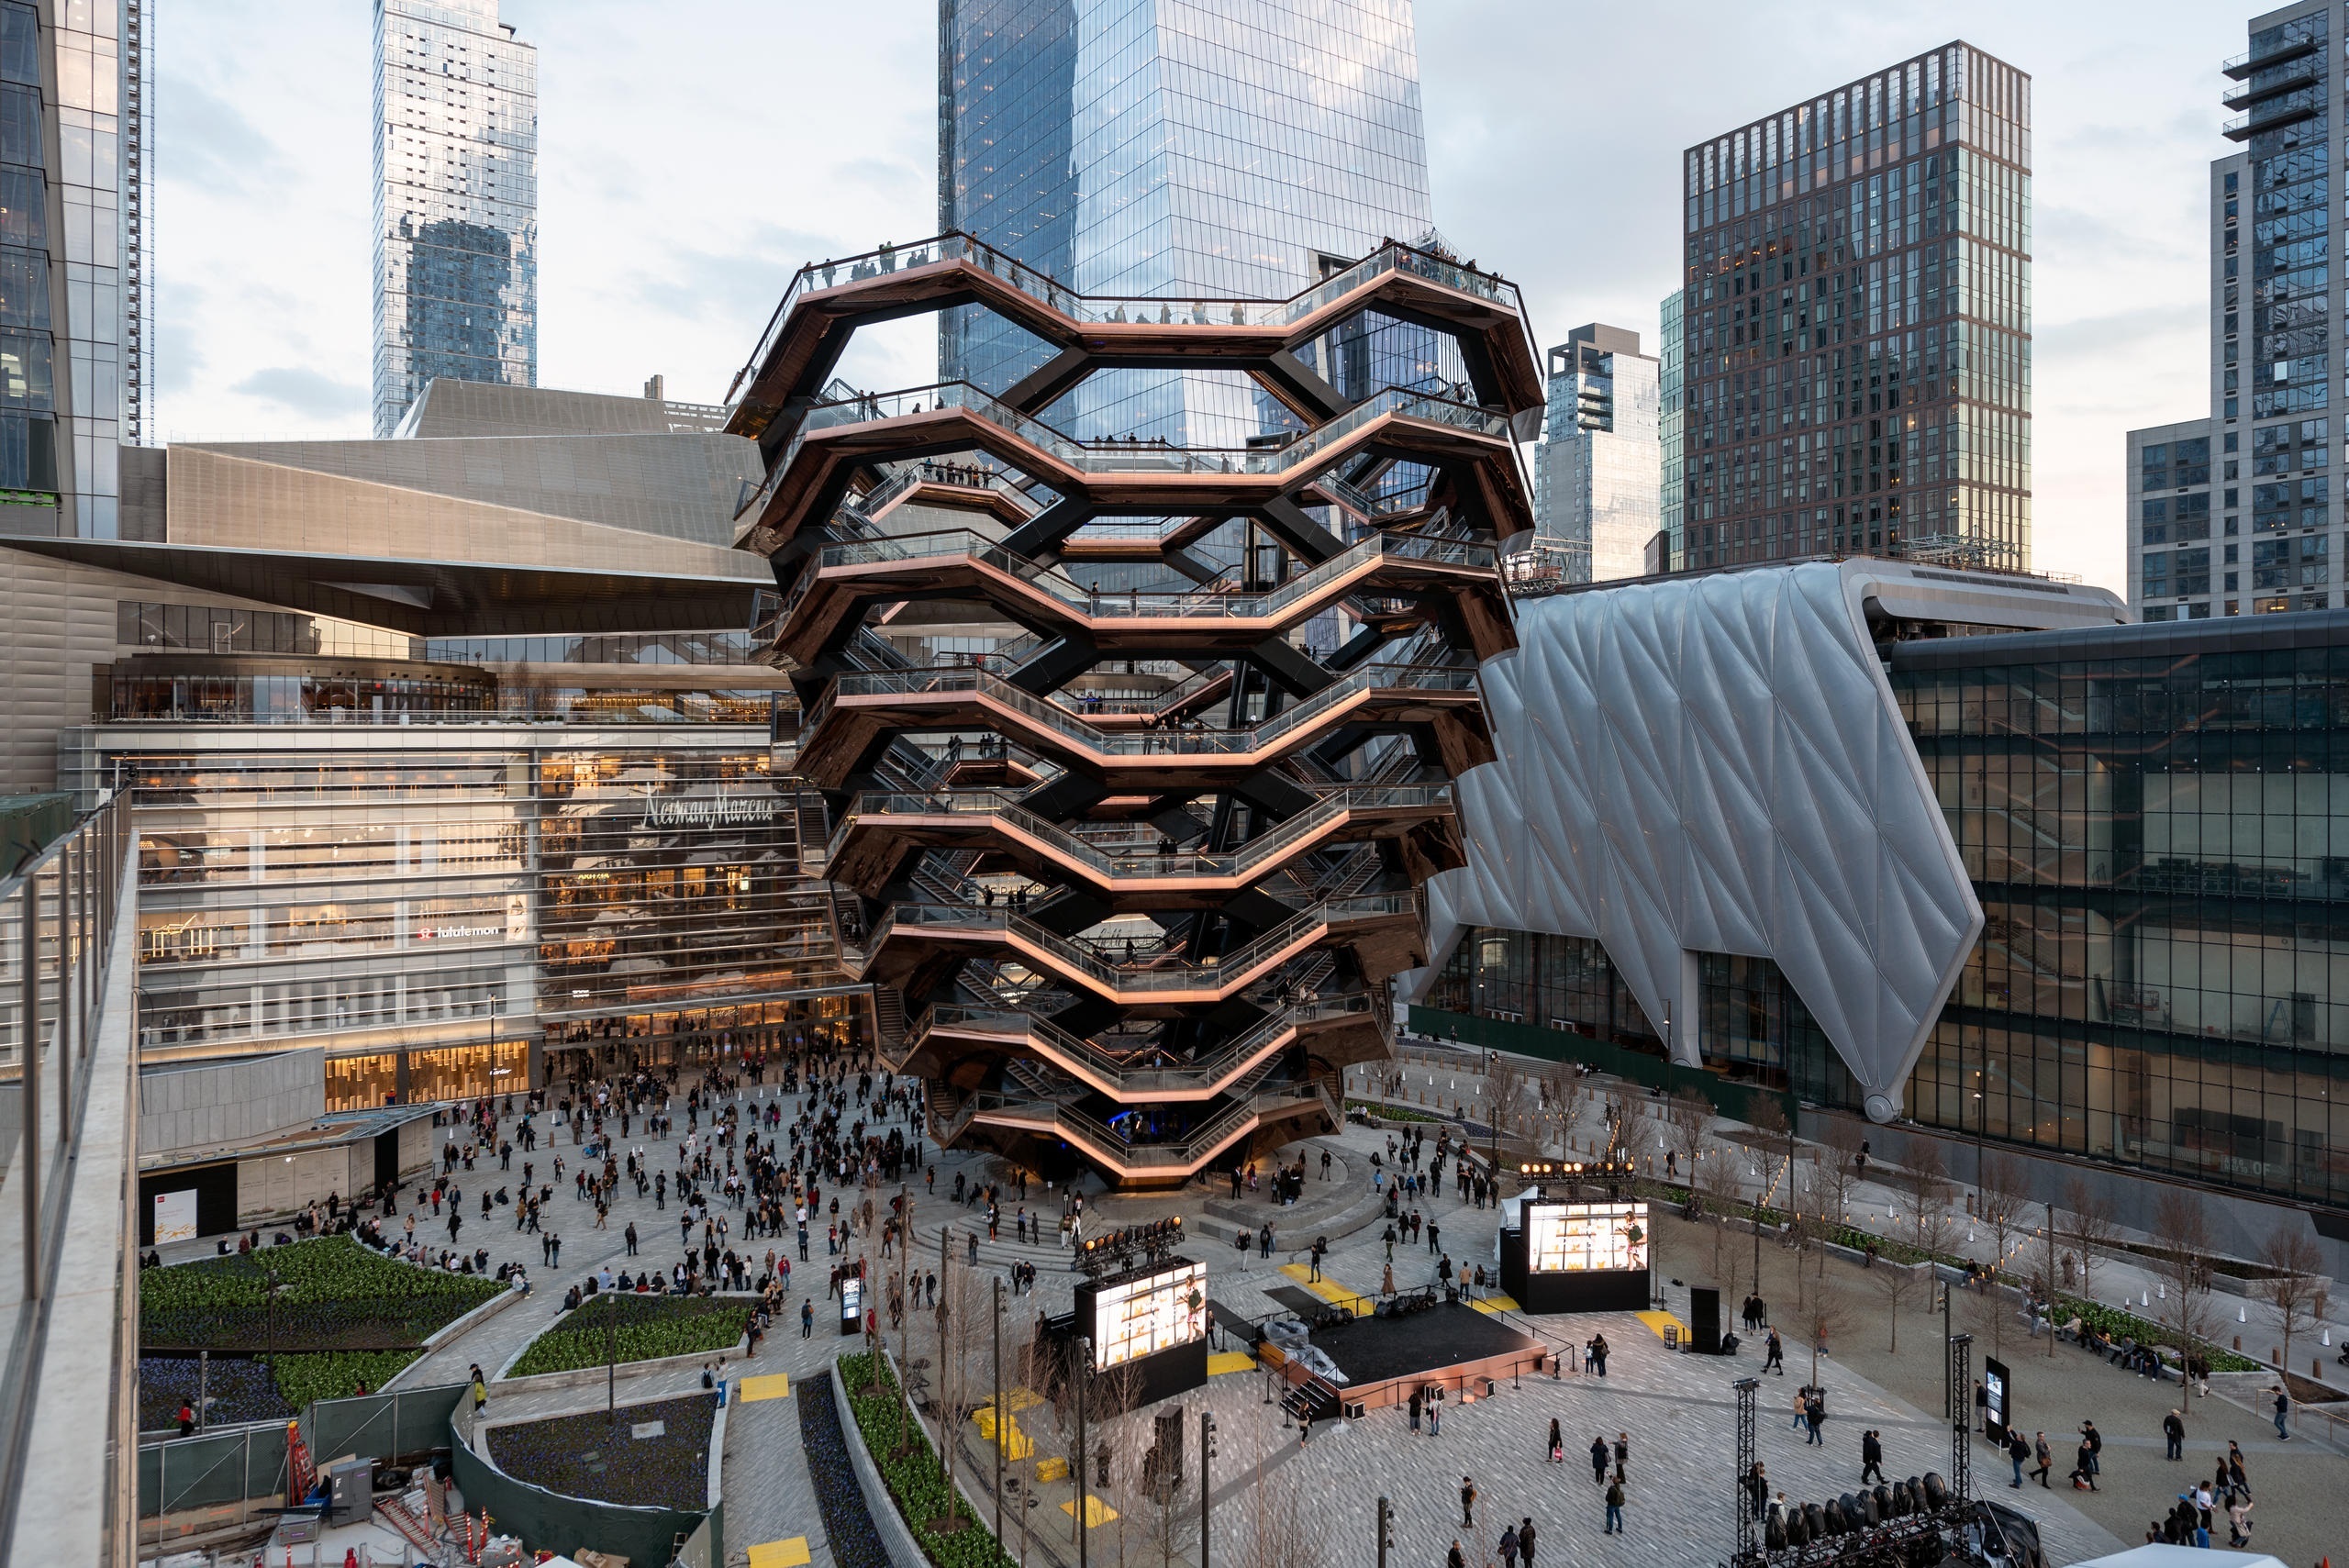 Fotografía cedida por Timothy Schenck donde se muestra "The Vessel", una compleja escalera en espiral compuesta por más de 2.500 peldaños y de más de 45 metros de alto, ubicada en el centro del proyecto inmobiliario de Hudson Yards en Manhattan, Nueva York (EEUU). EFE/Timothy Schenck
